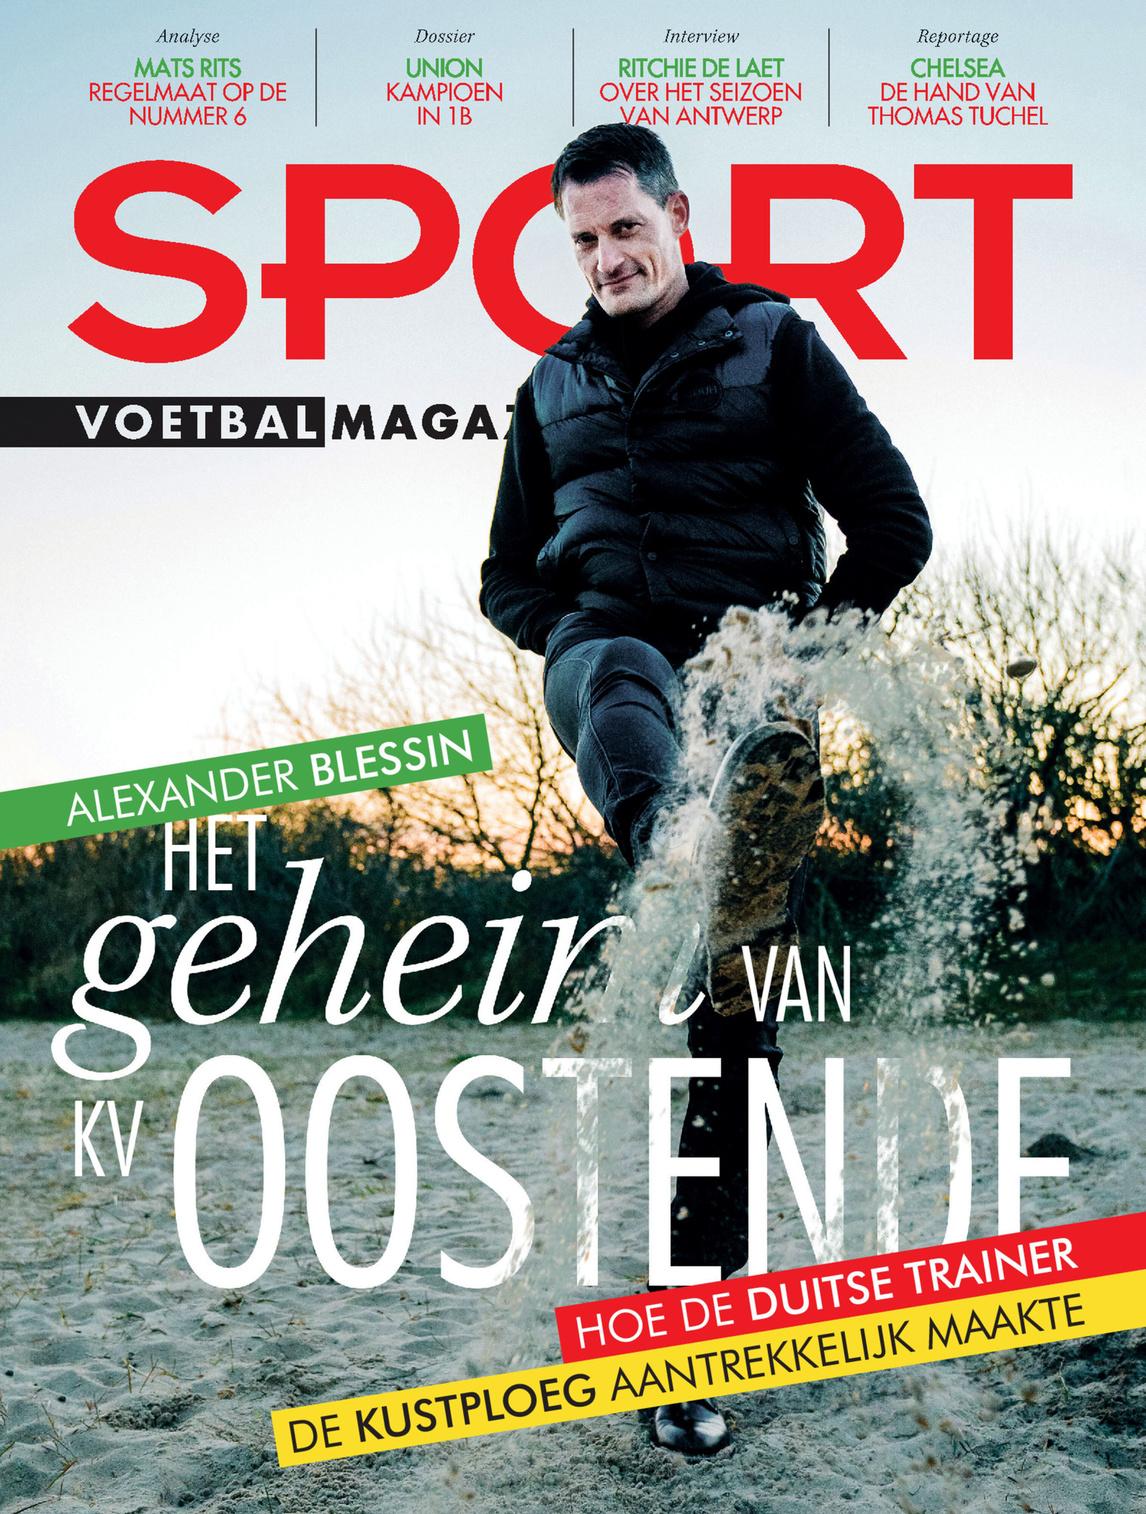 Alexander Blessin staat deze week op de cover van Sport/Voetbalmagazine